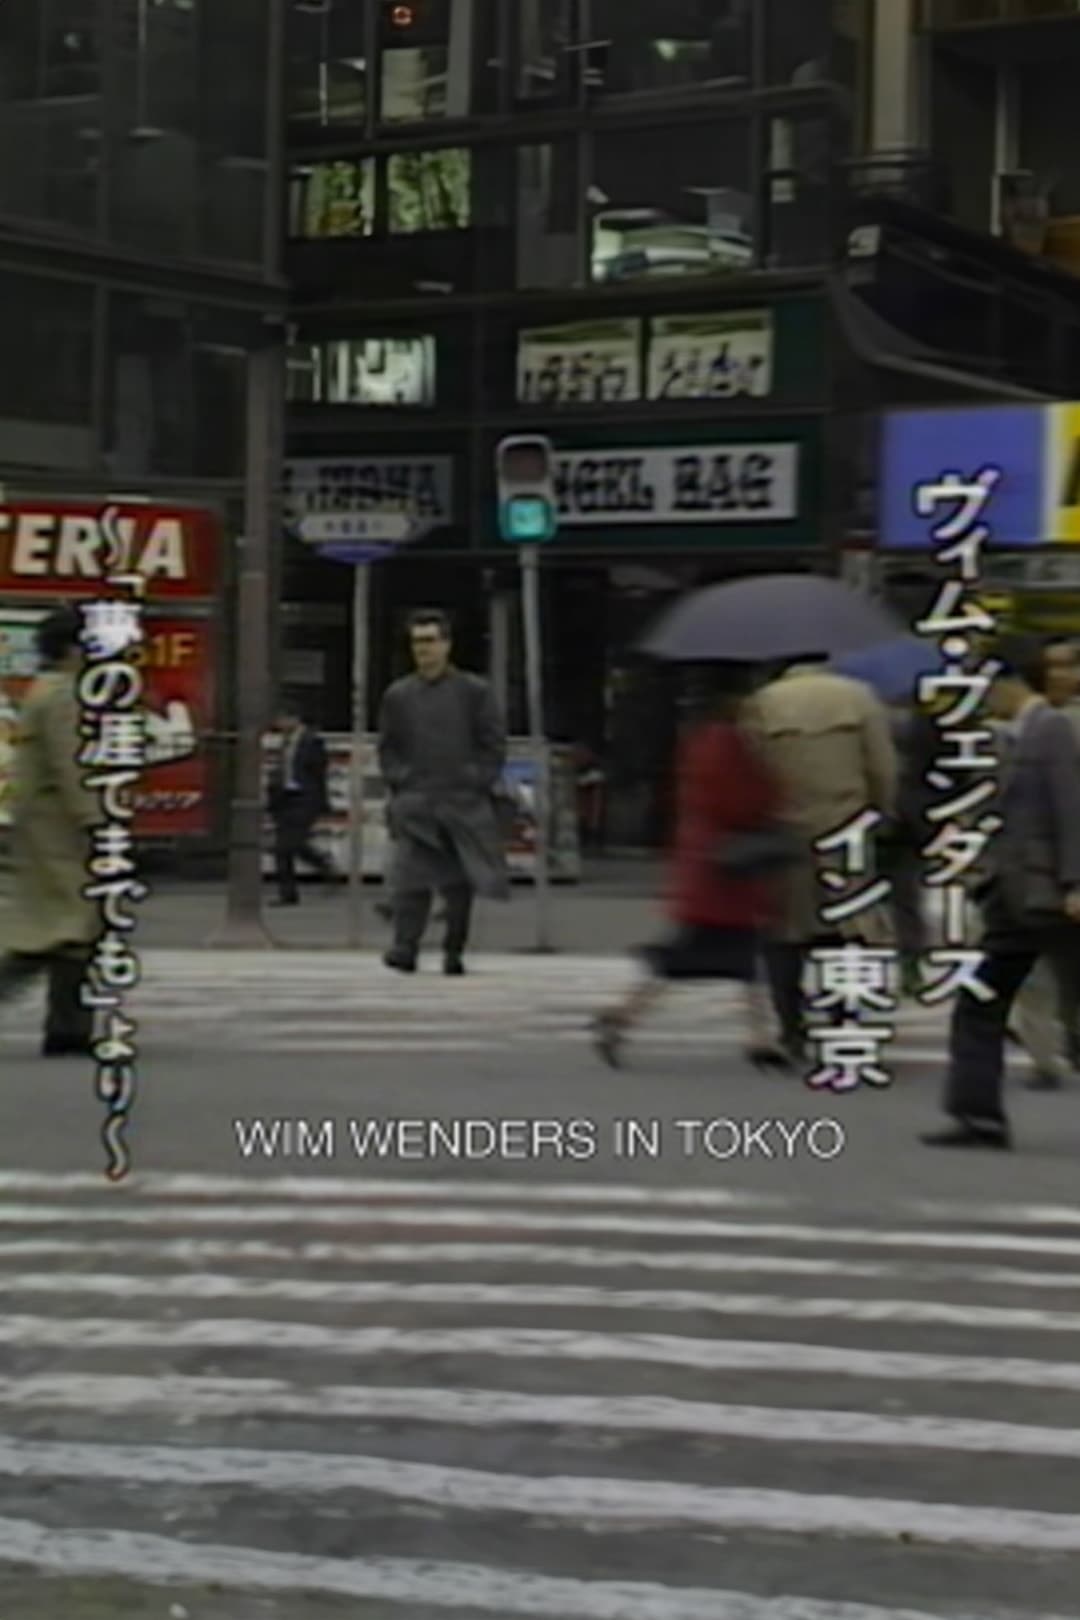 Wim Wenders in Tokyo (1990)